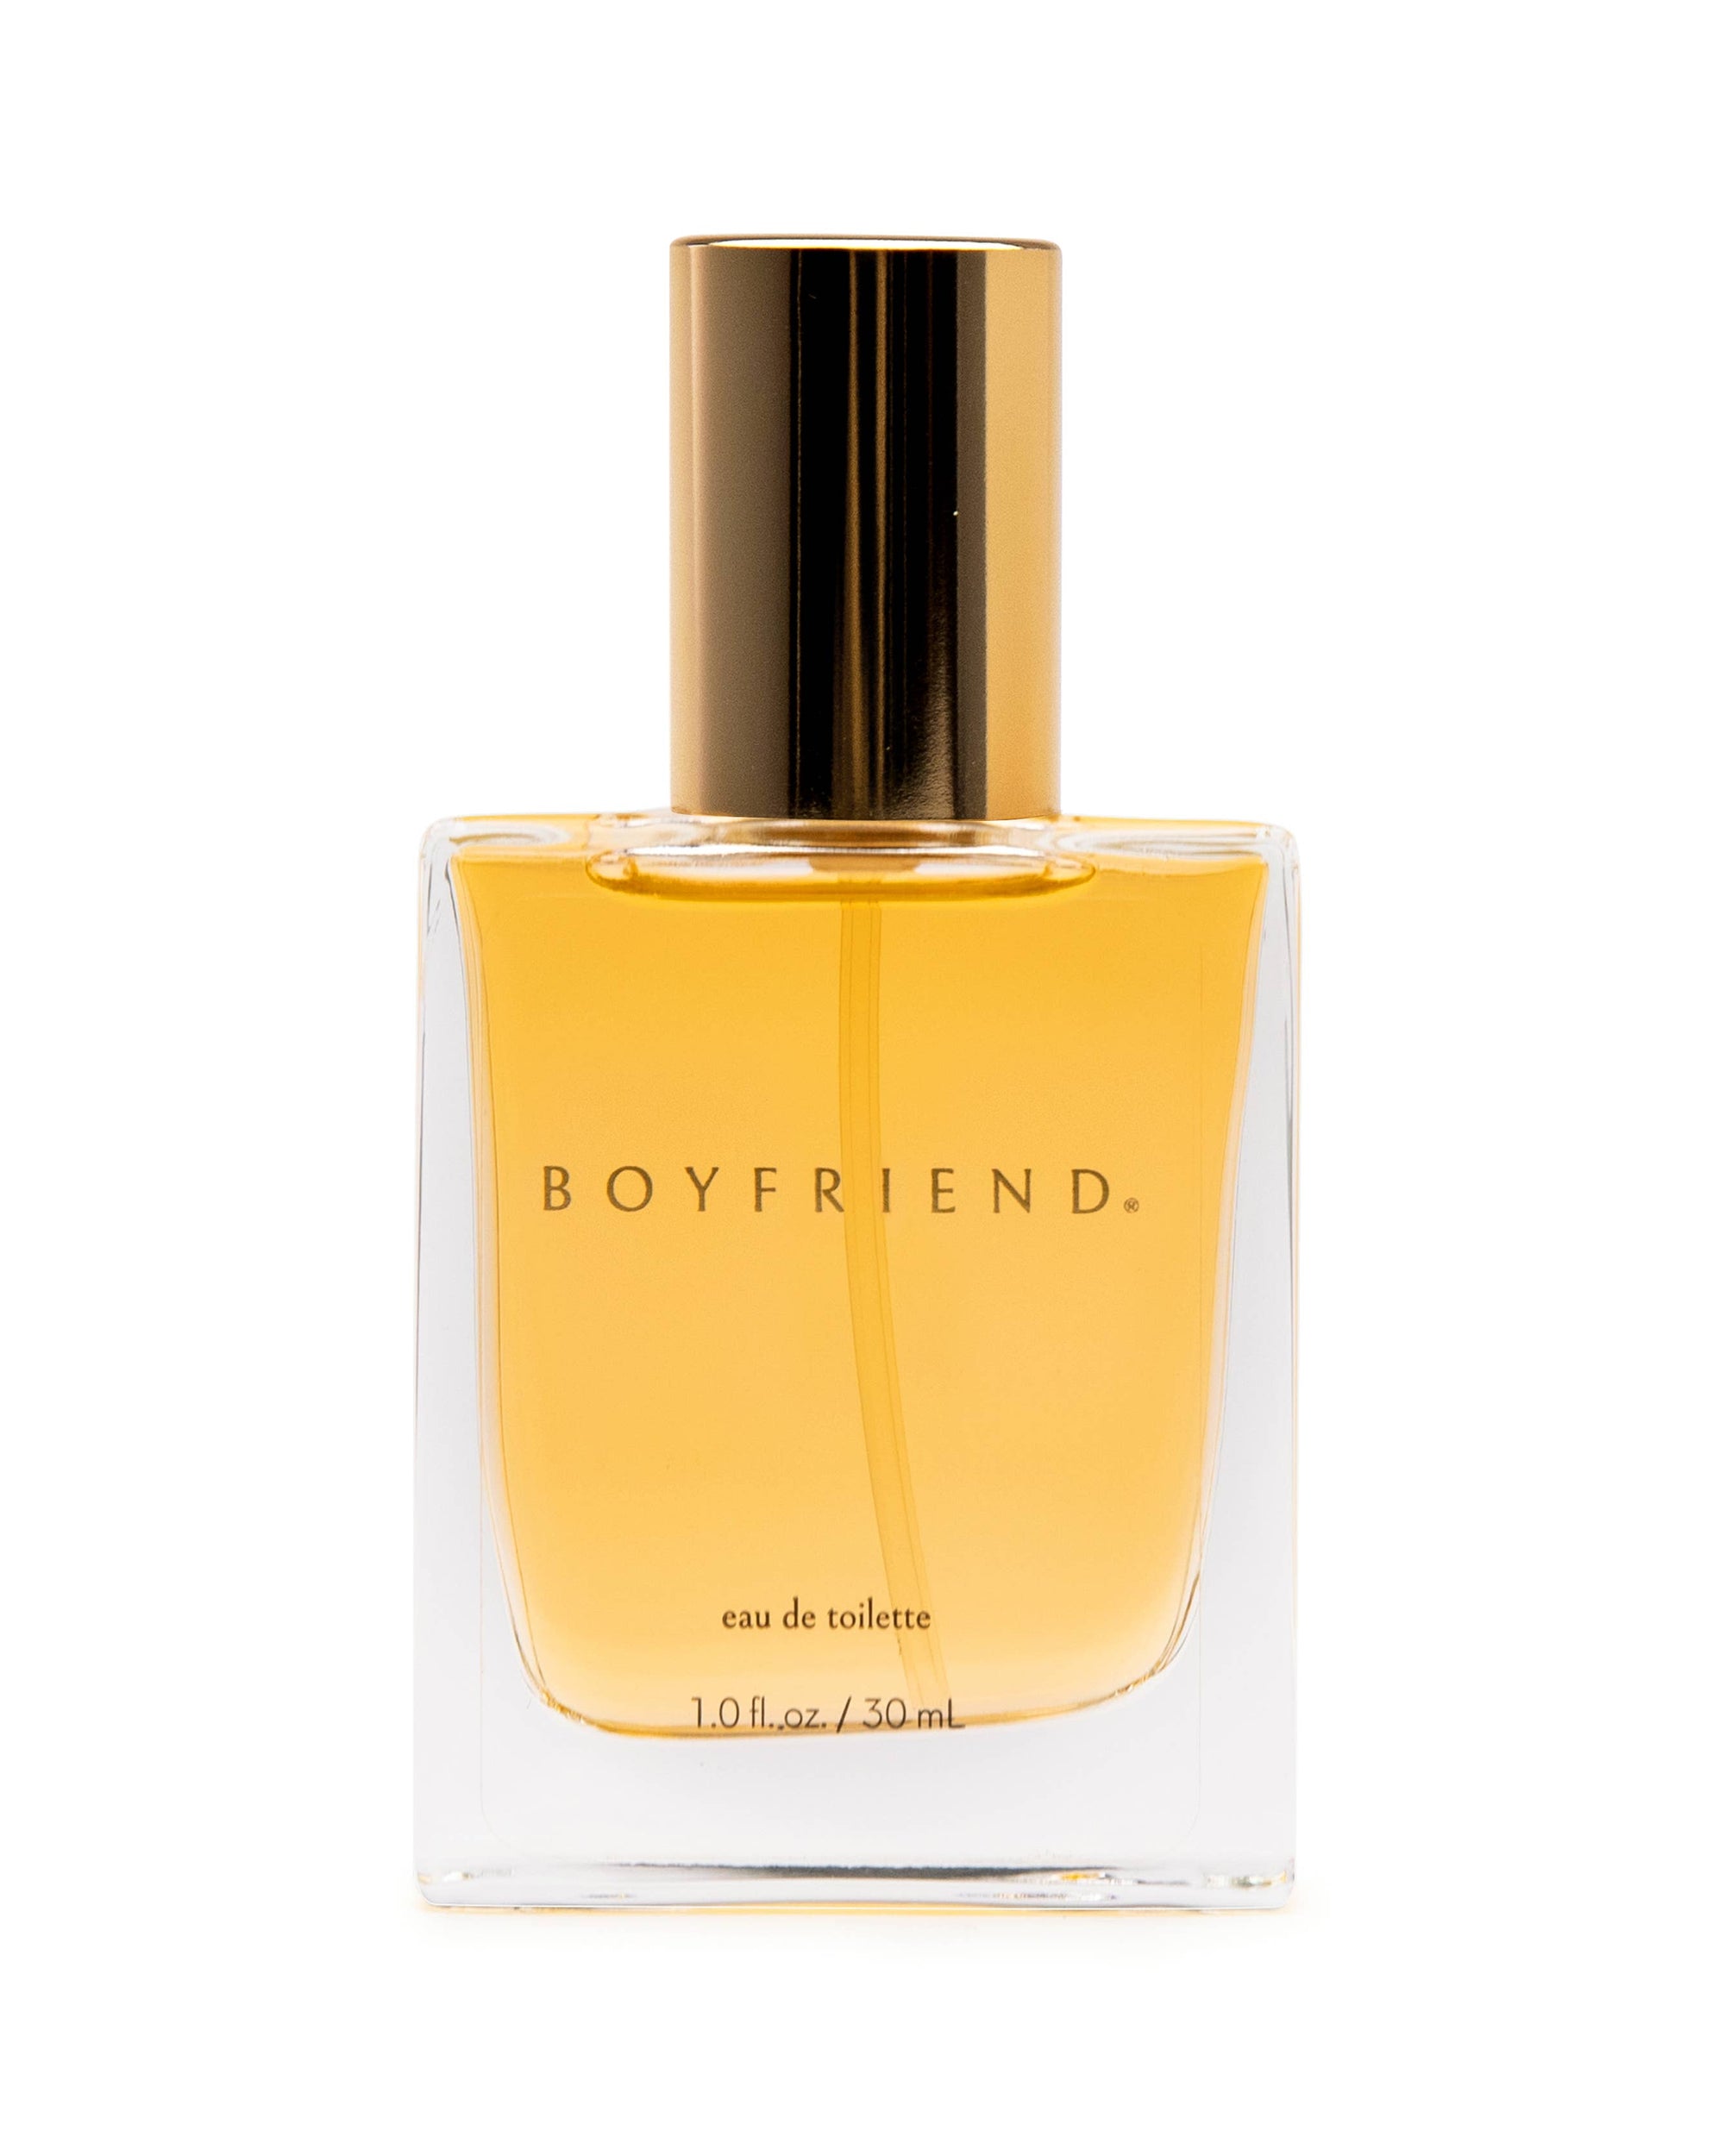 Boyfriend Perfume - Boyfriend Eau de Toilette 1.0 fl oz / 30mL